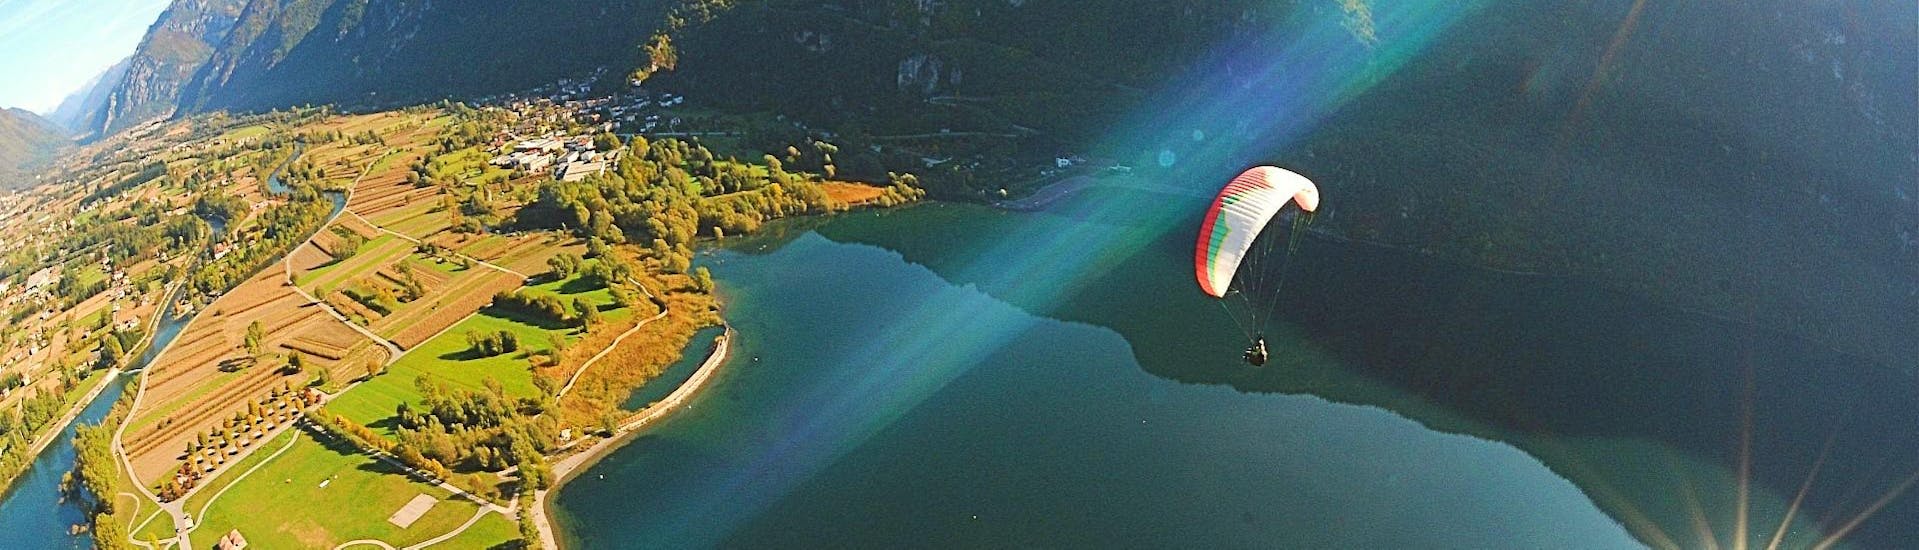 Vol en parapente panoramique à Idroland - Lago d'Idro.